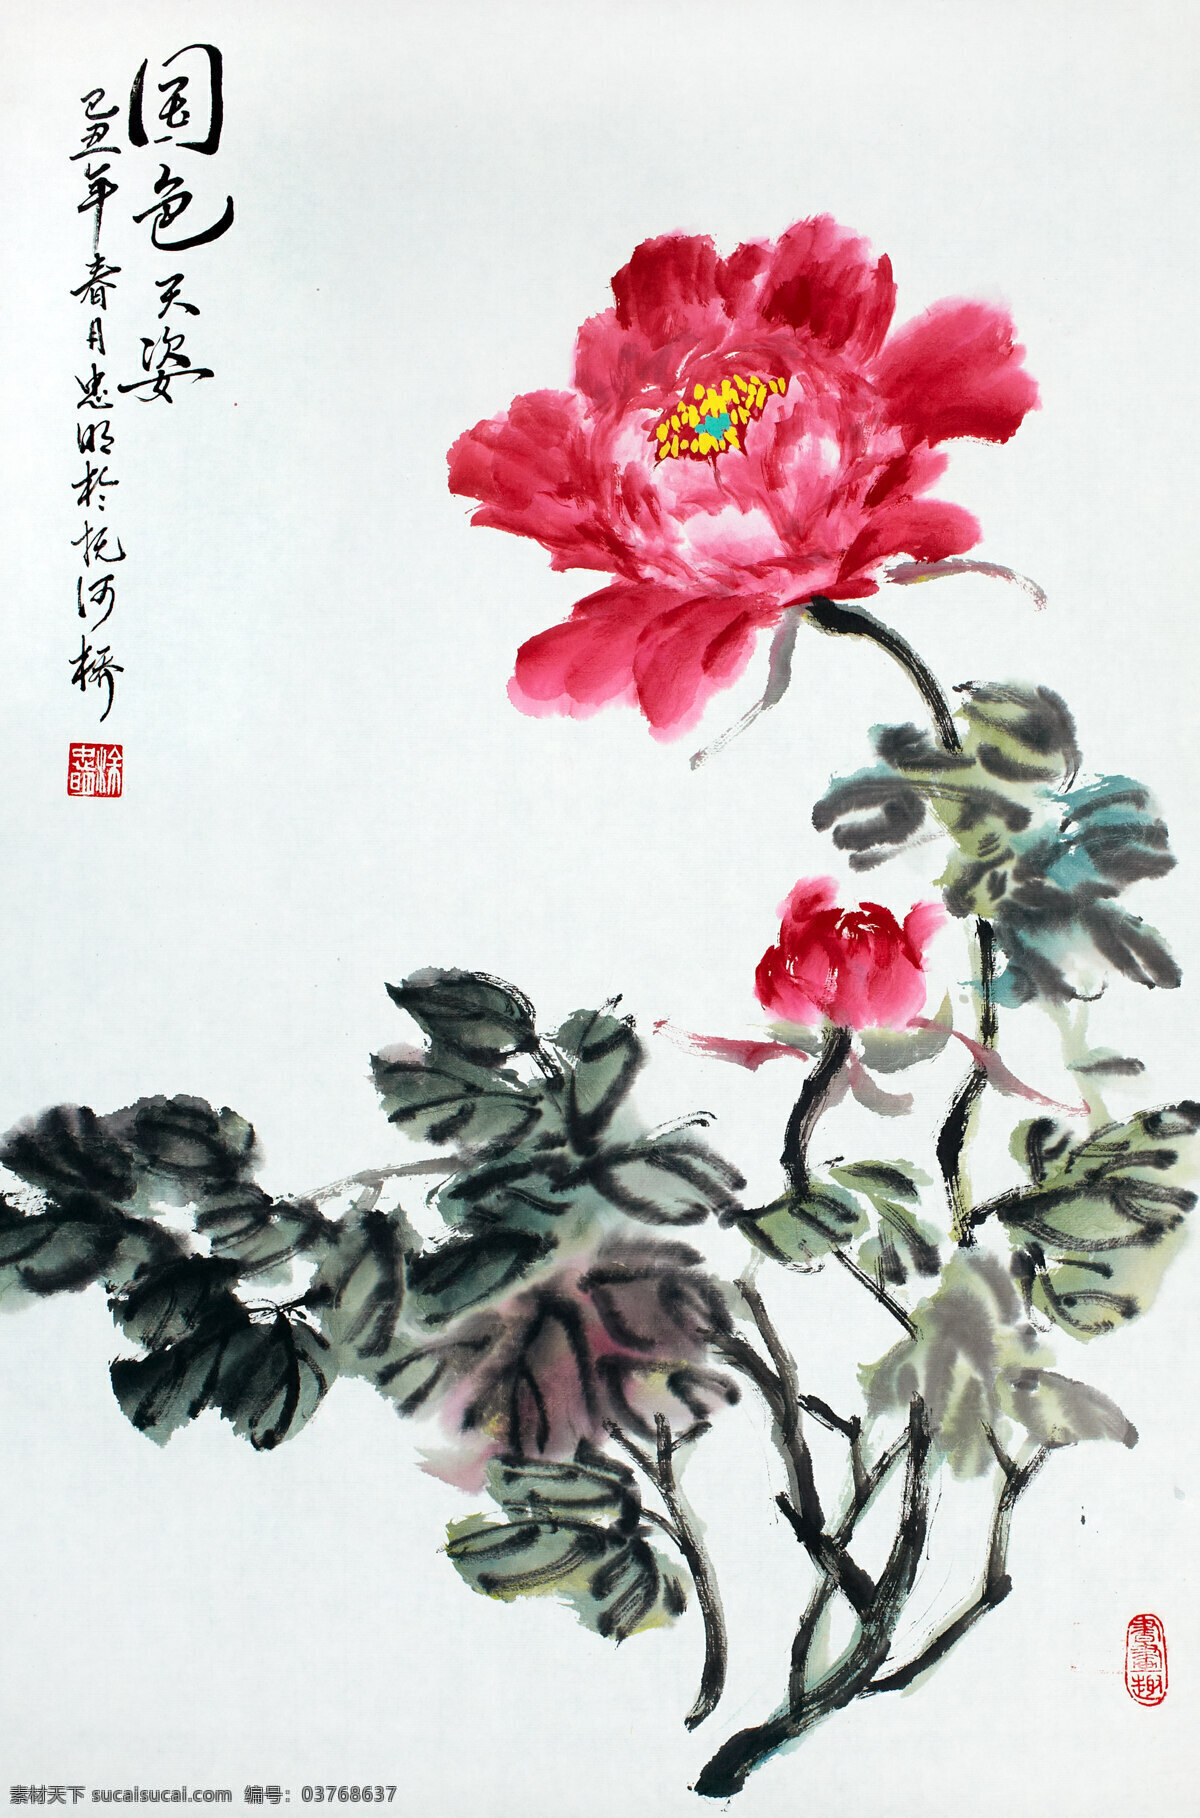 水墨 牡丹 国画 中国画 绘画艺术 装饰画 水墨画 书画文字 文化艺术